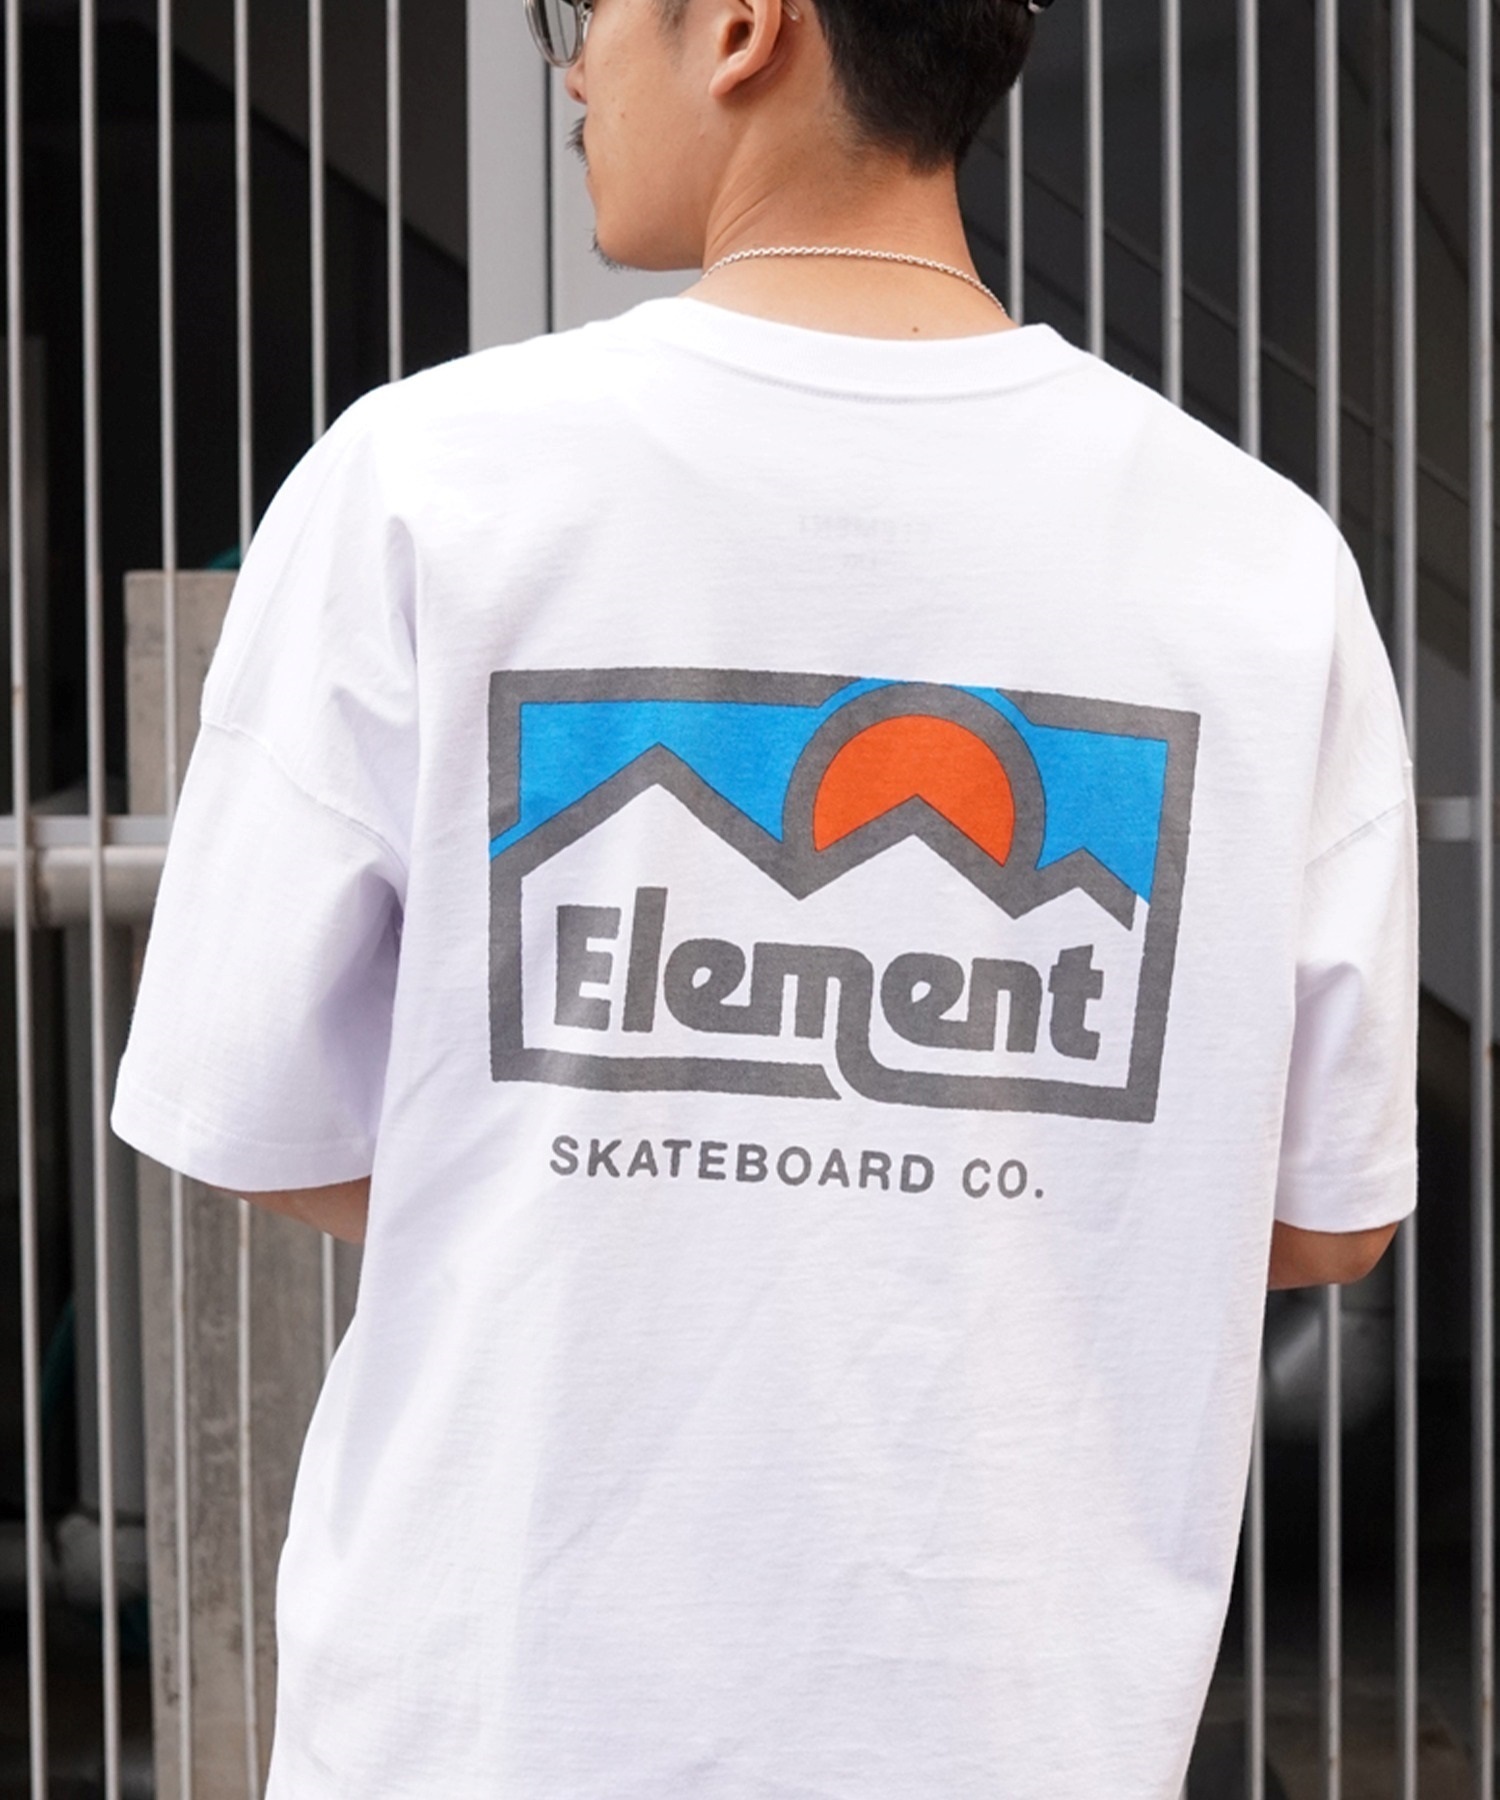 【マトメガイ対象】ELEMENT エレメント メンズ 半袖 Tシャツ オーバーサイズ バックプリント クルーネック BE021-223(FBK-M)